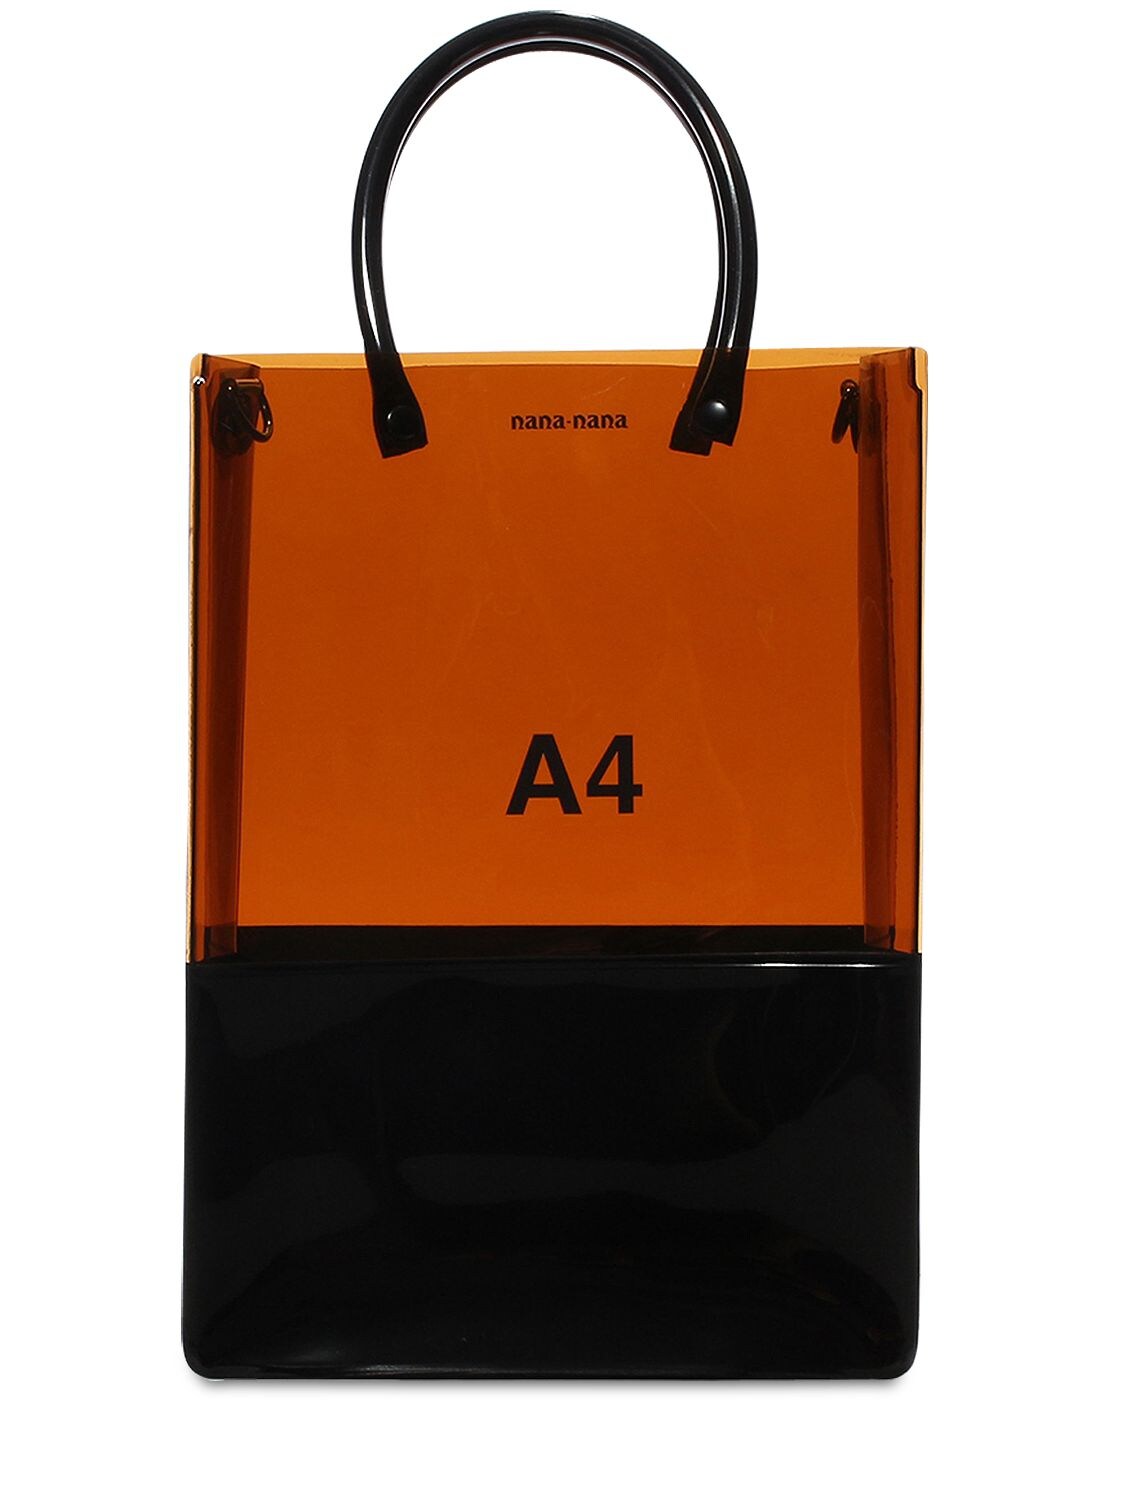 Nana-nana A4 Pvc Shopping Bag In Brown,black